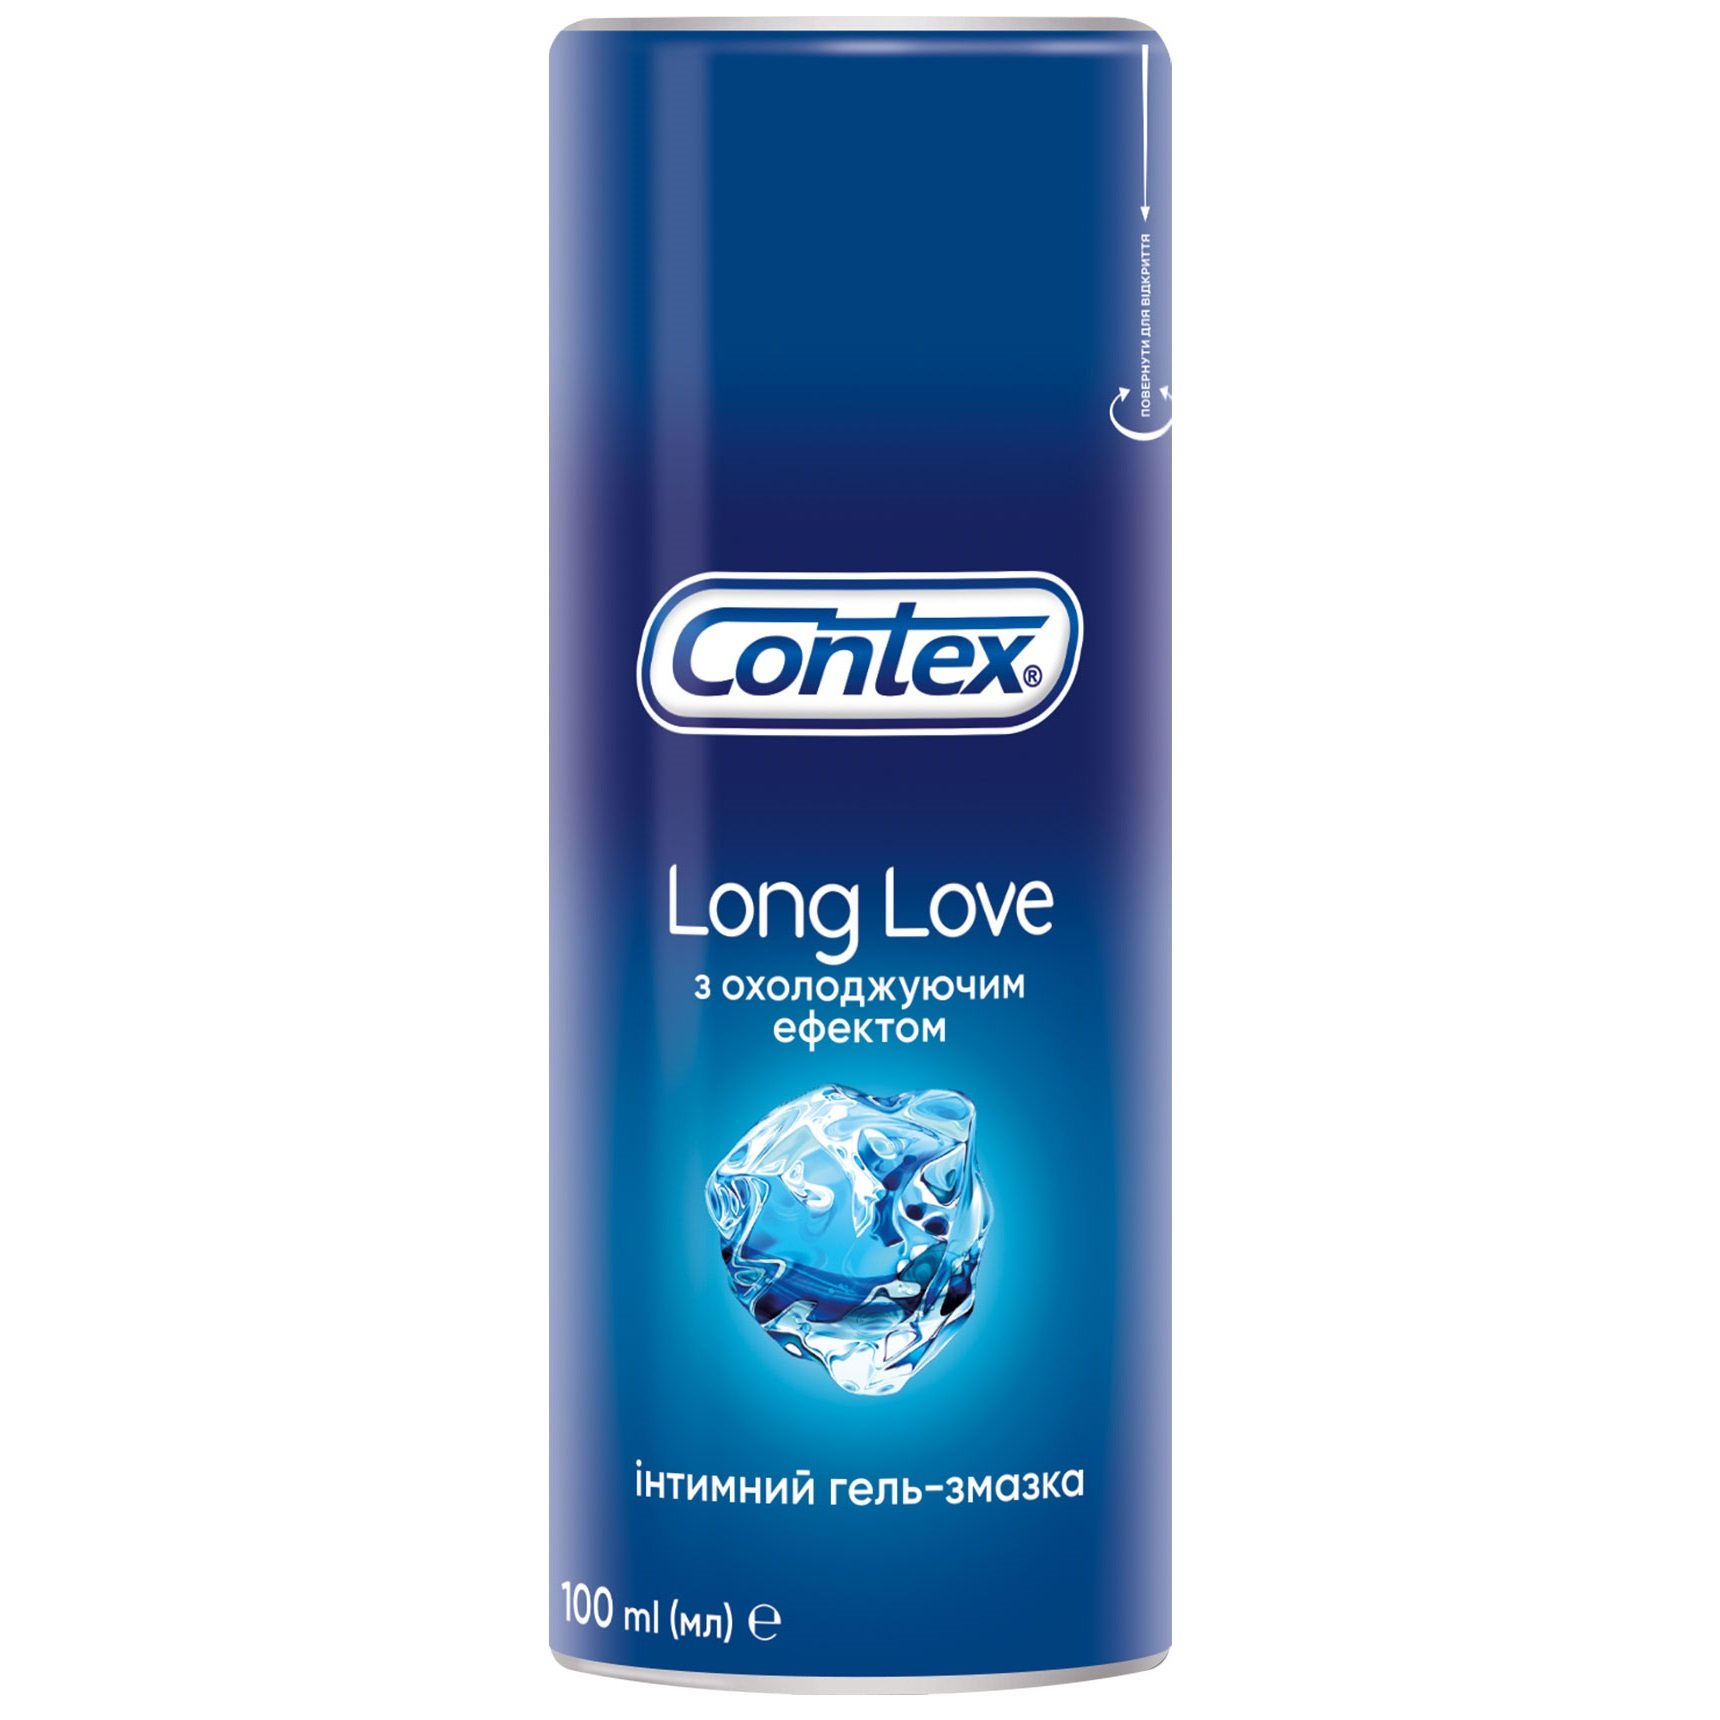 Інтимний гель-змазка Contex Long Love з охолоджуючим ефектом (лубрикант), 100 мл (8159536) - фото 1